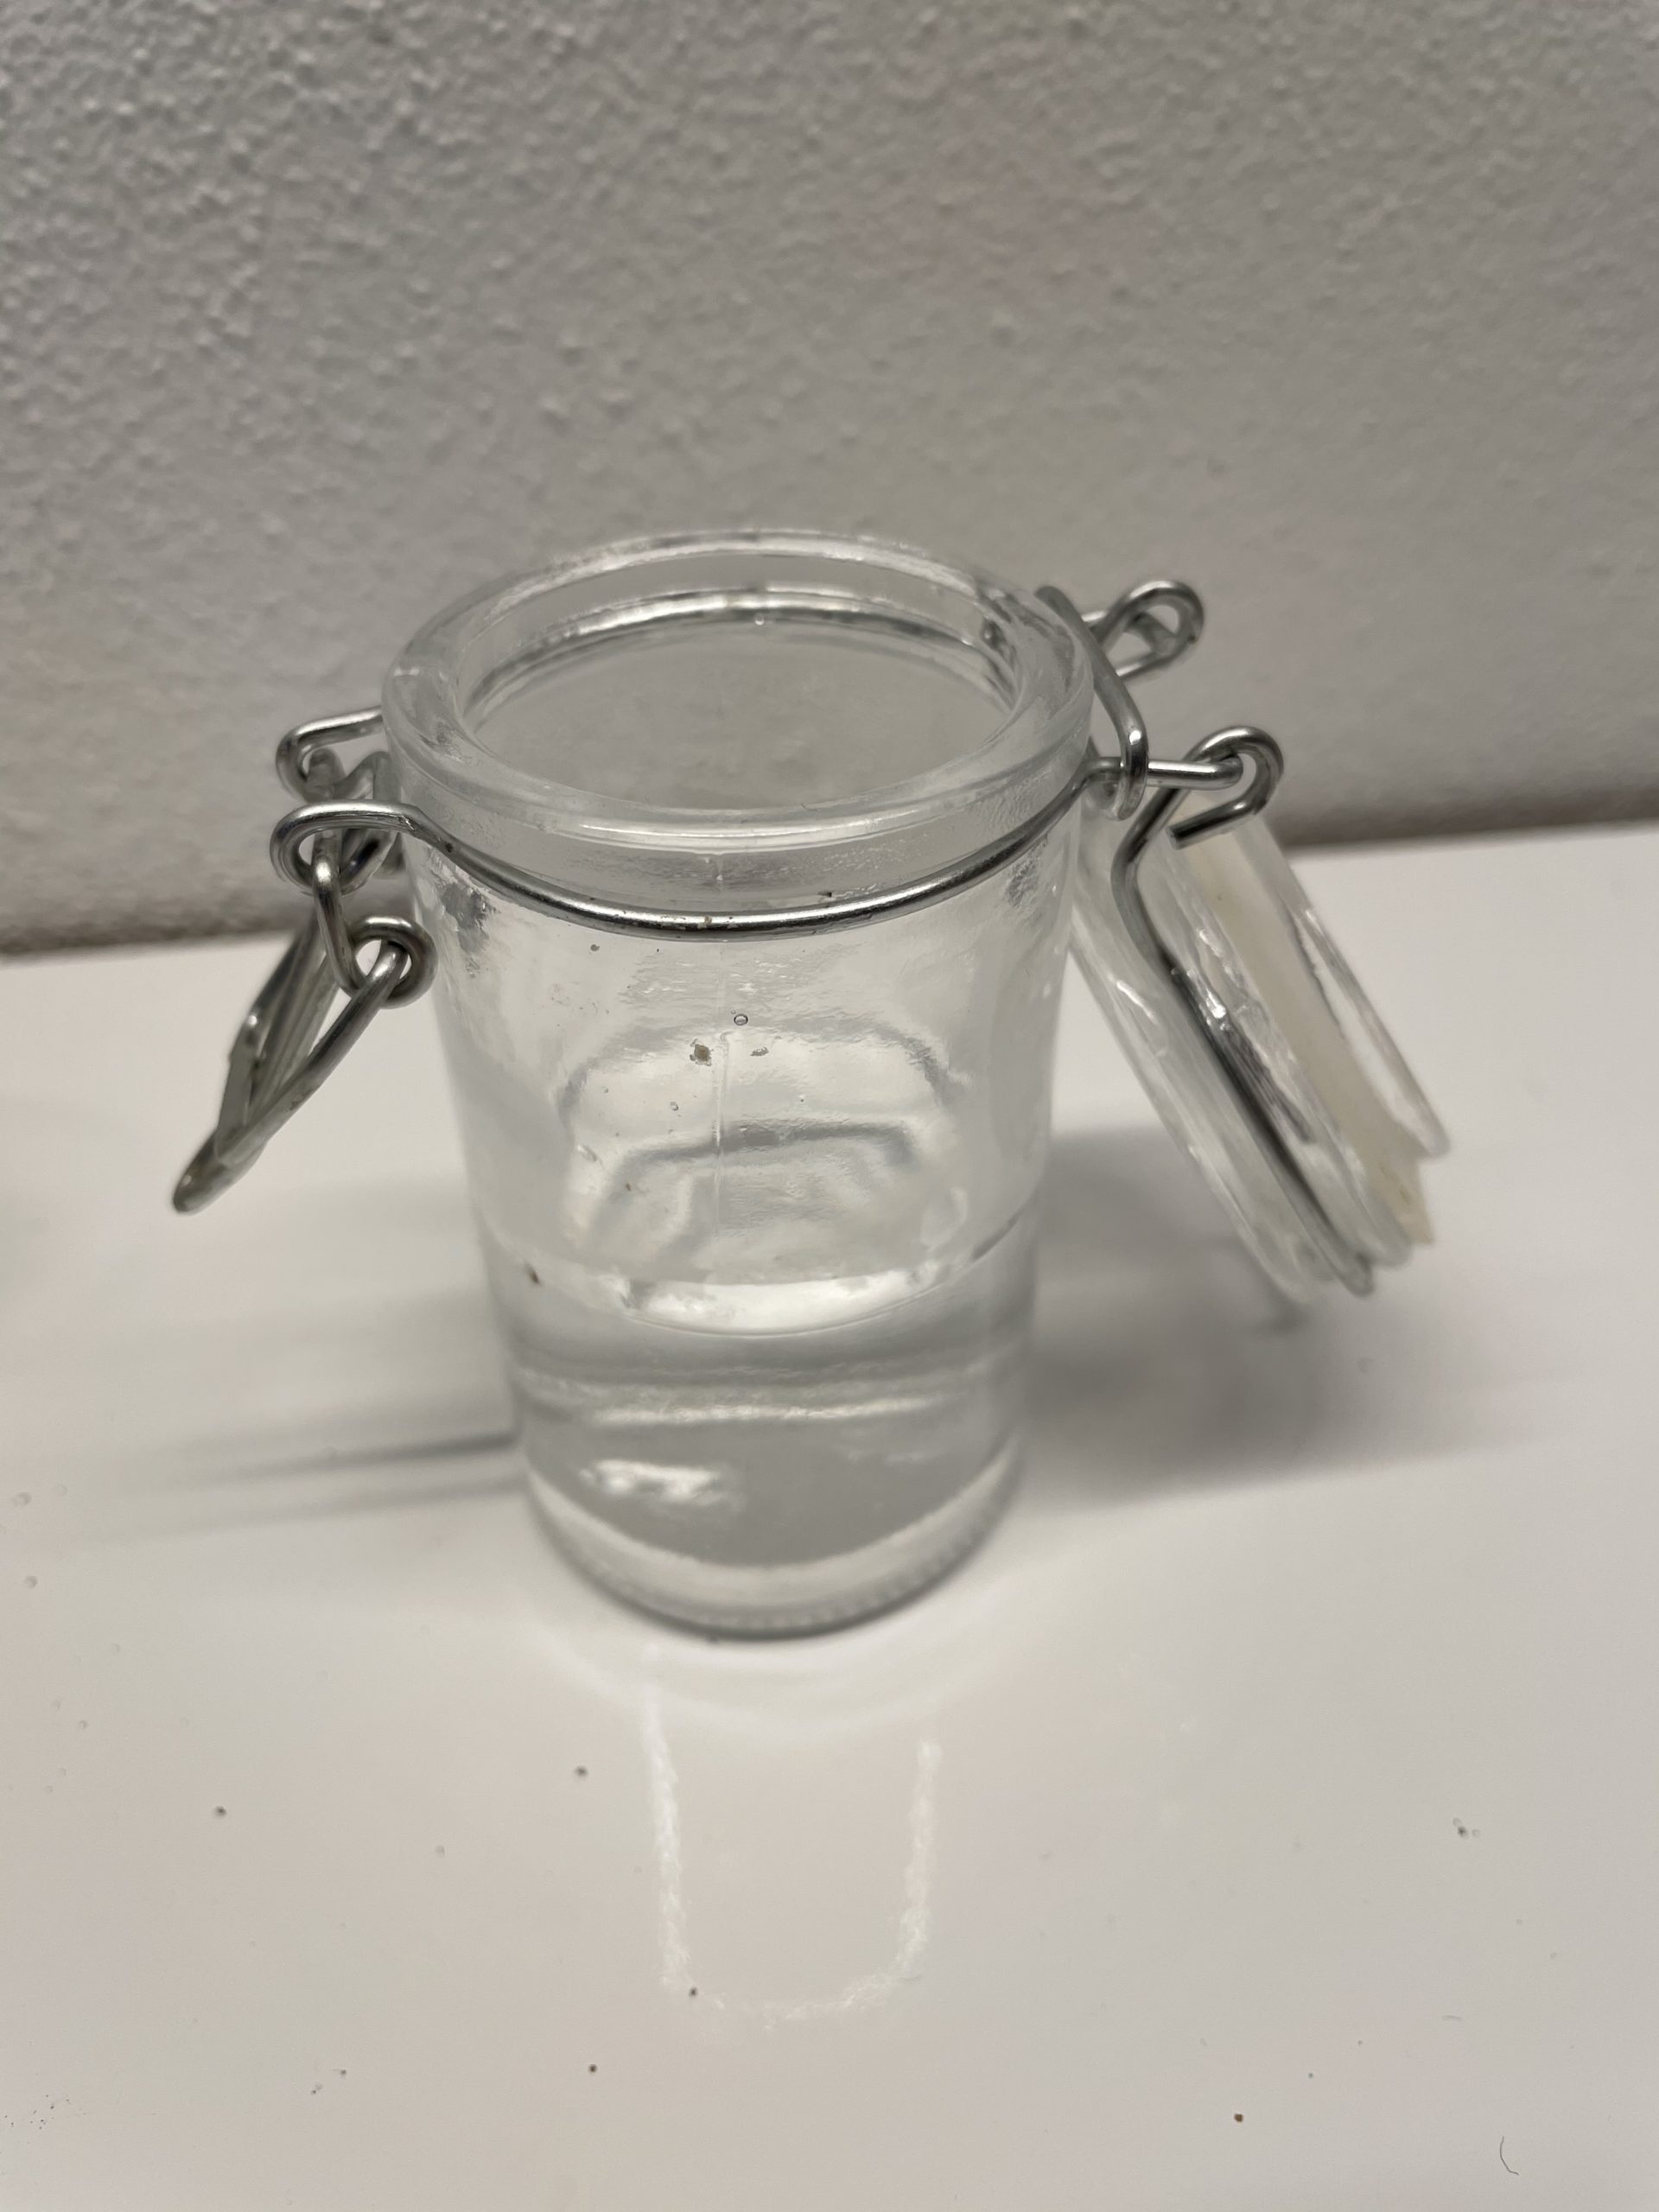 Bild zum Schritt 1 für das Bastel- und DIY-Abenteuer für Kinder: 'Verwendet ein kleines Gefäß, möglichst aus Glas. So seht ihr...'